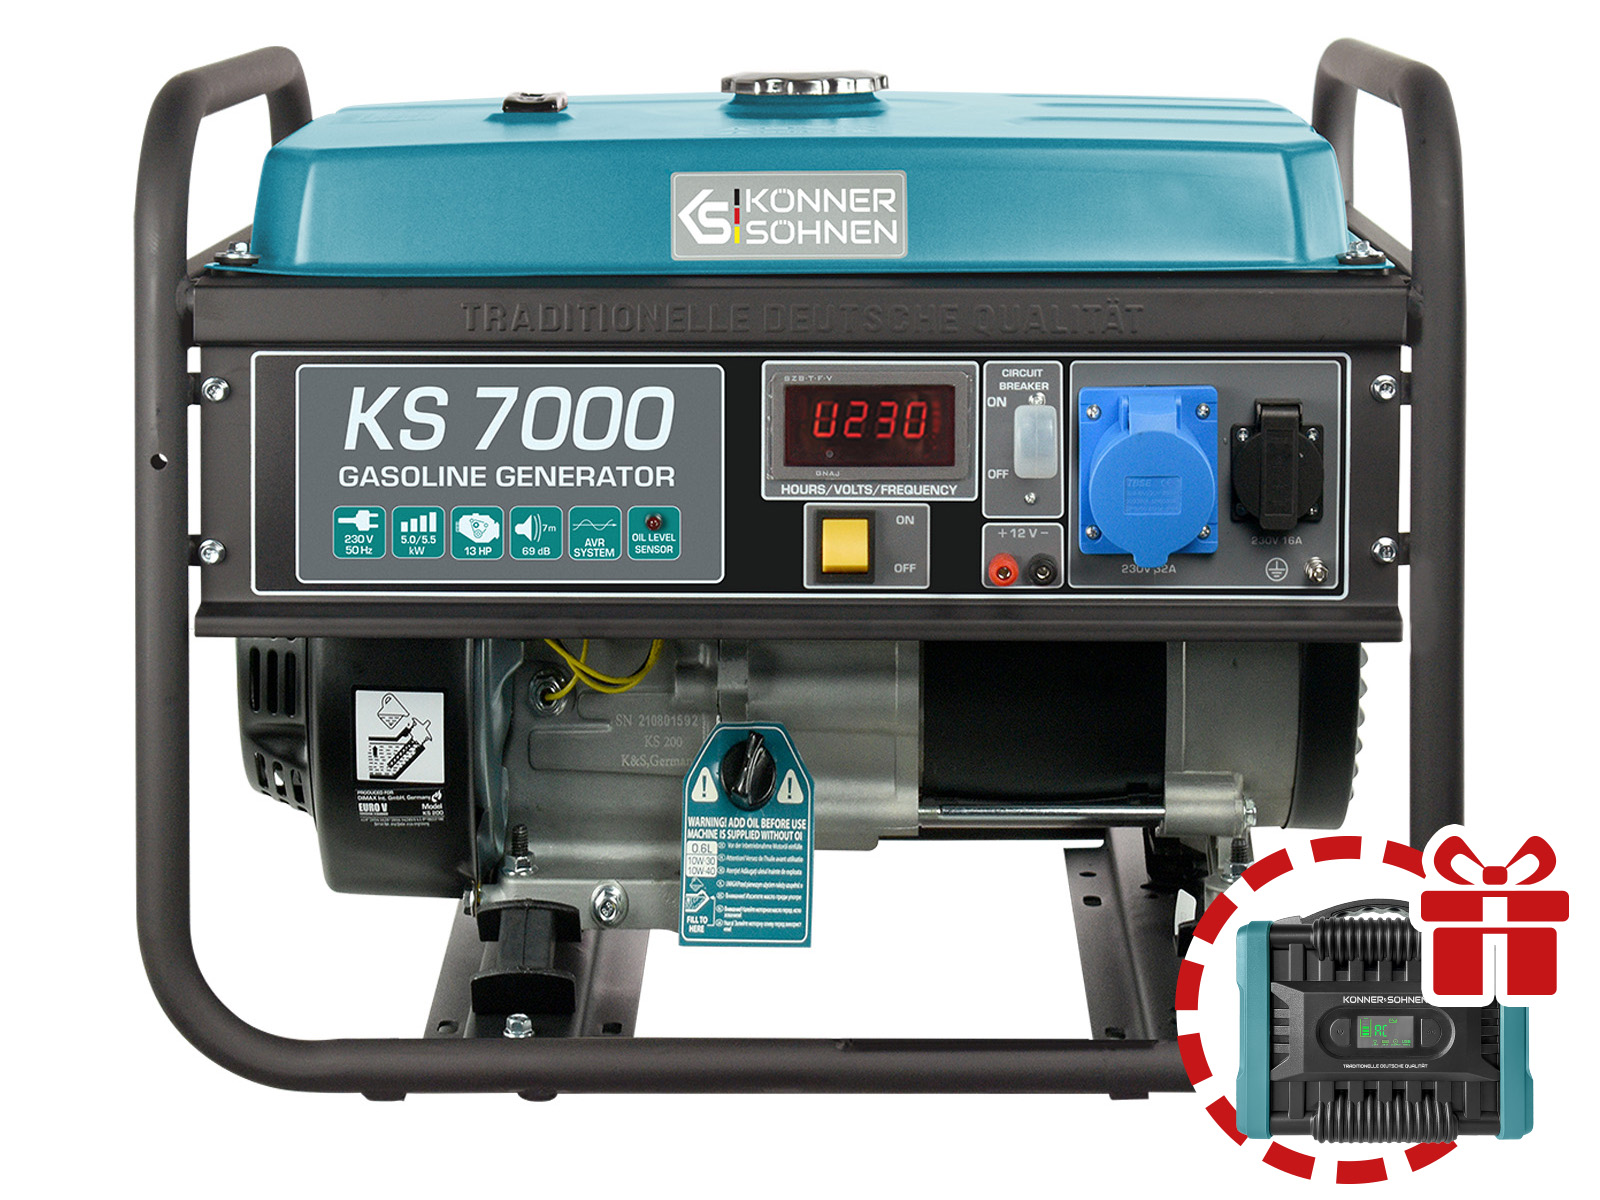 Gasoline generator "Könner & Söhnen" KS 7000